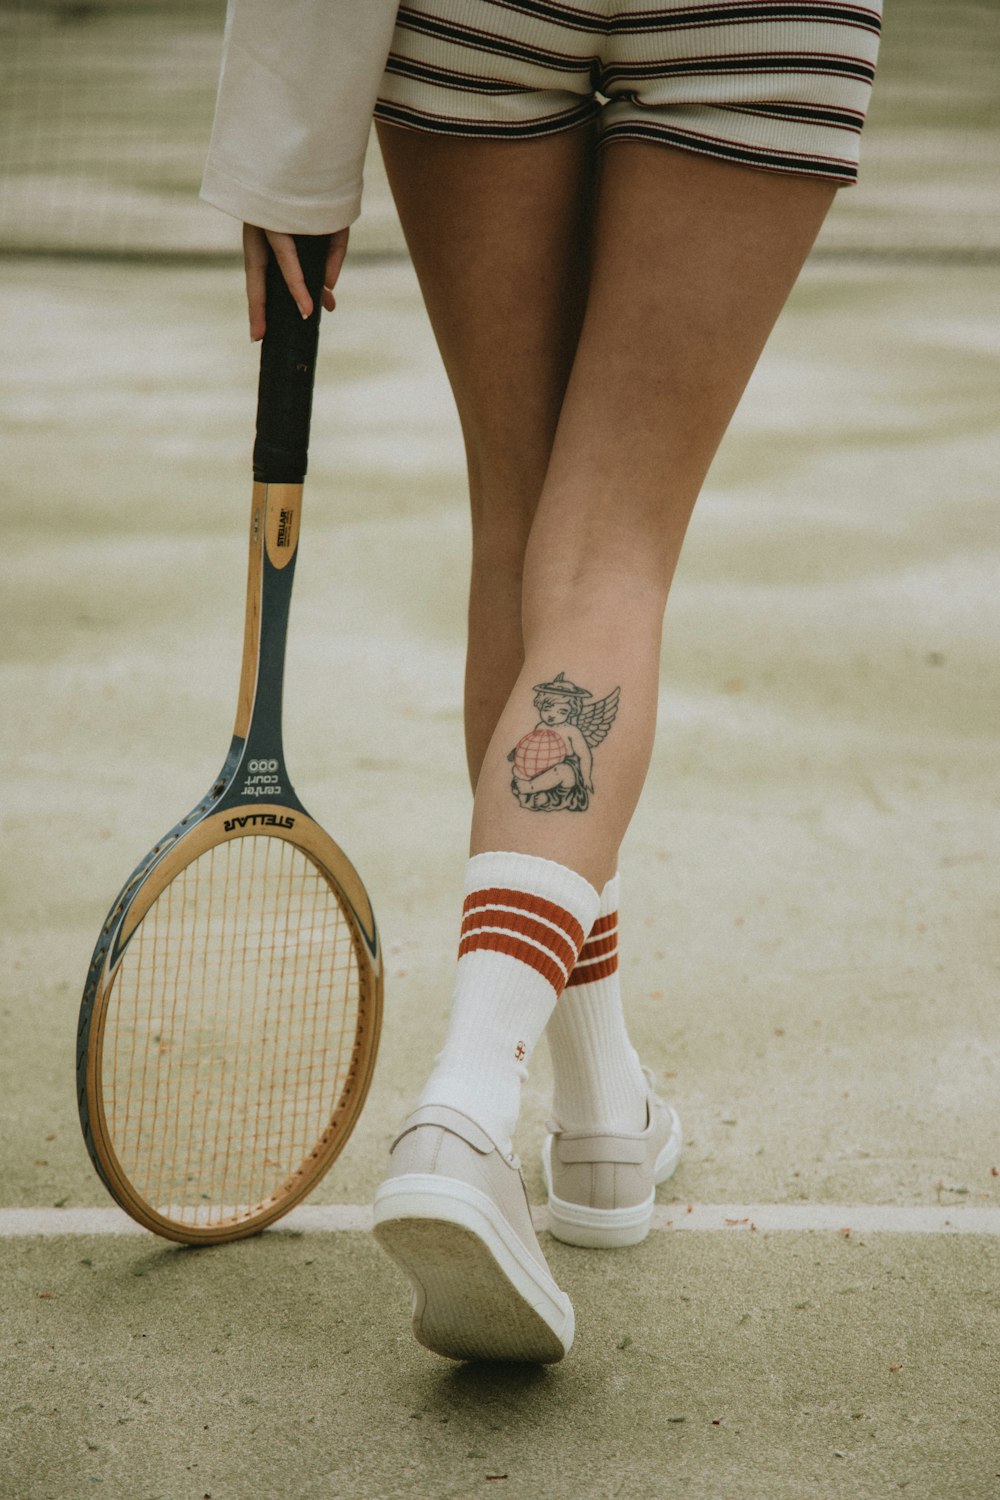 donna in calzini bianchi e rossi e scarpe di pelle bianca che tengono una racchetta da tennis marrone e nera